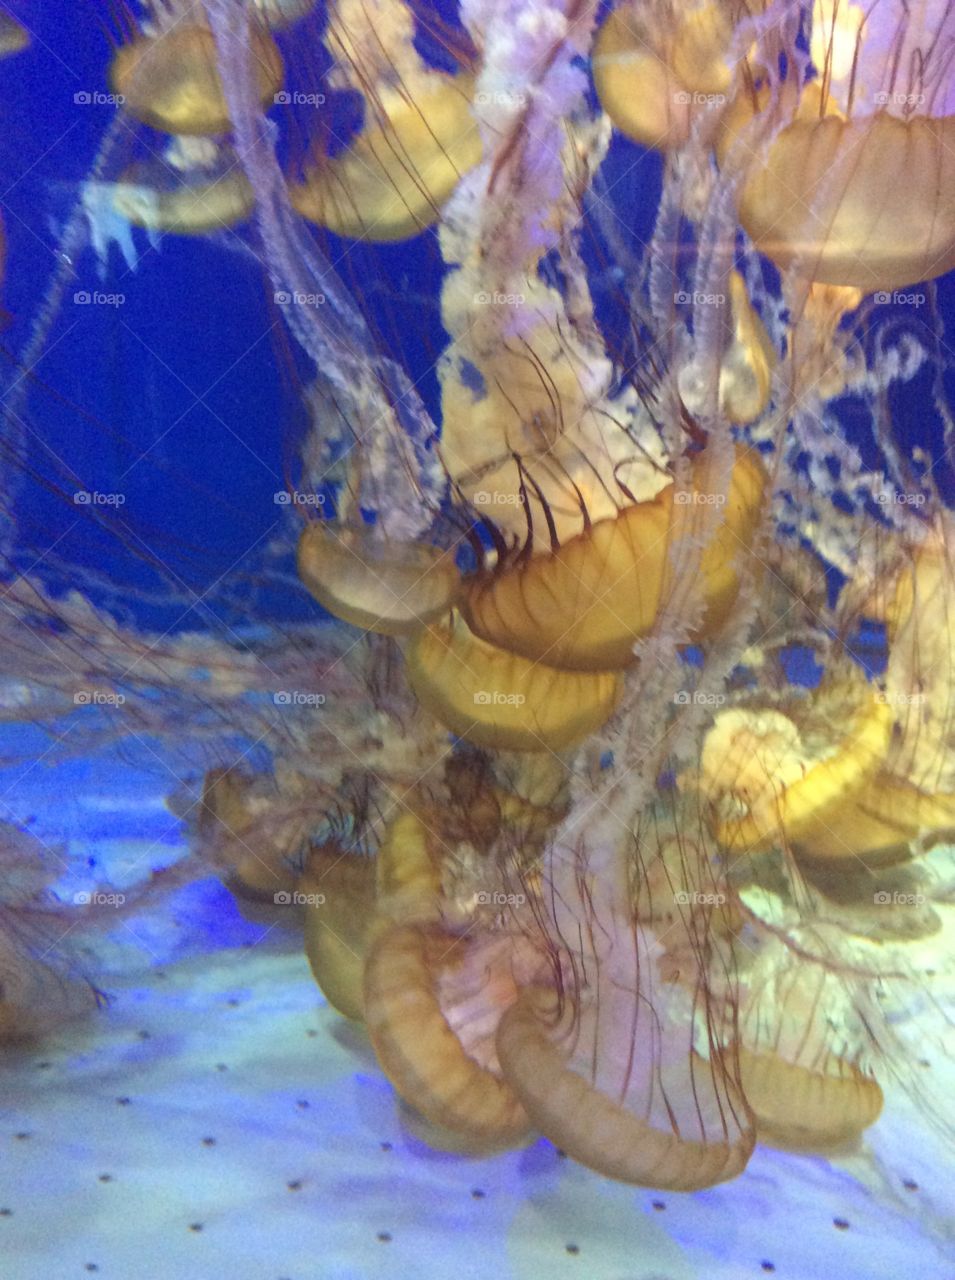 Jellyfish 3. At aquarium of the pacific